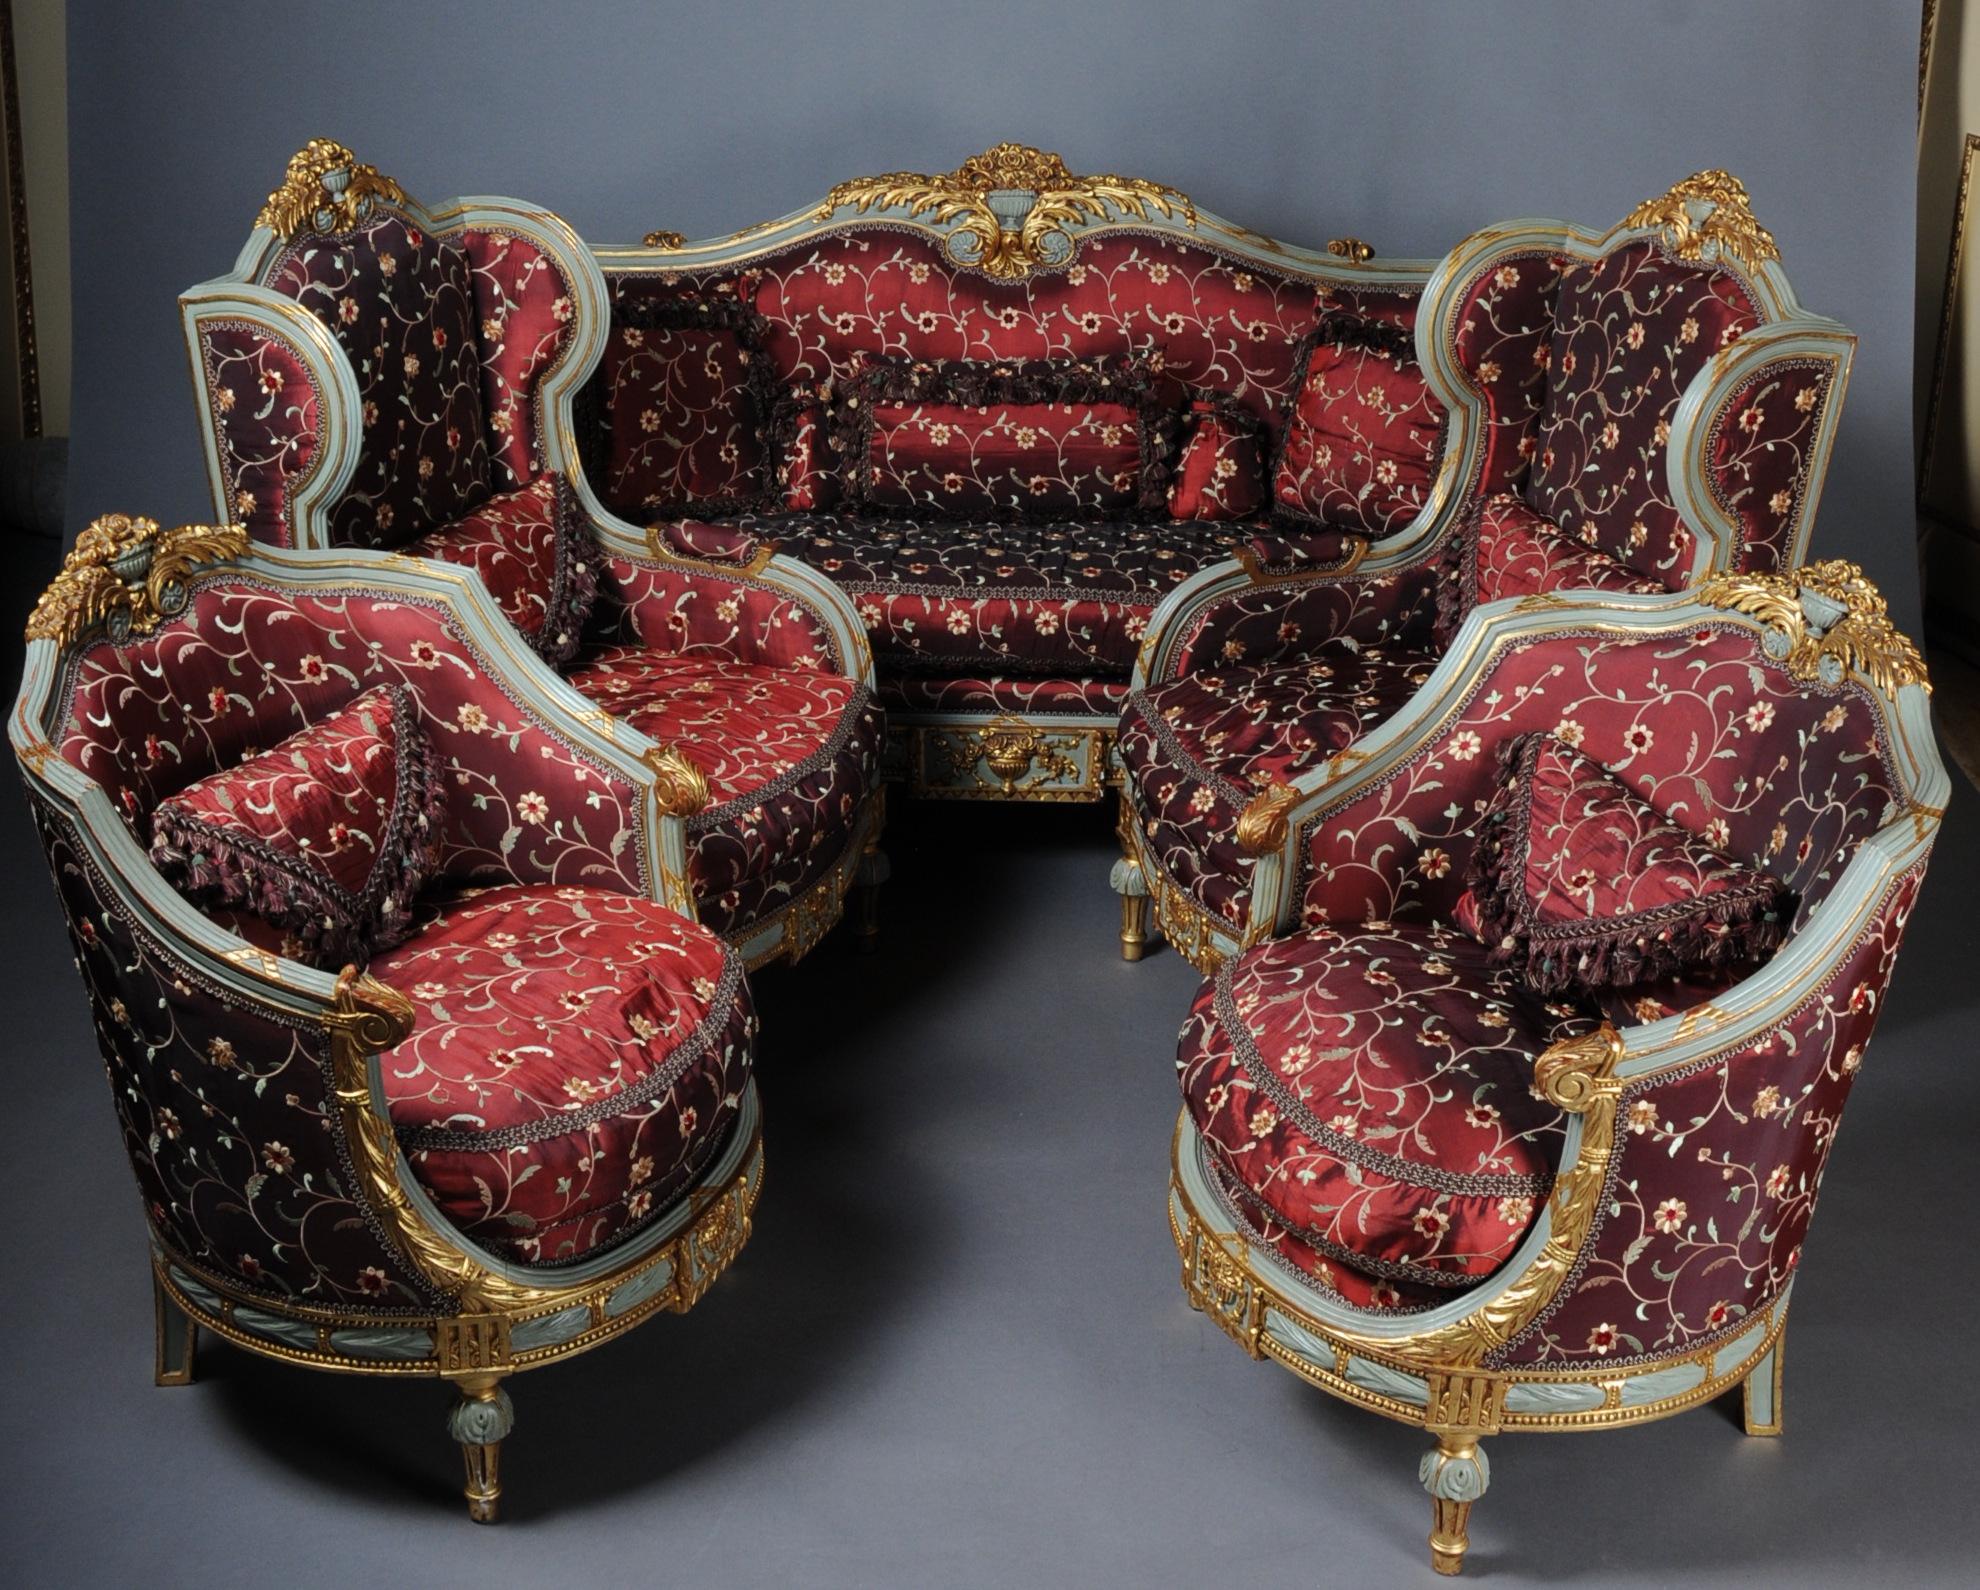 Ensemble de sièges de salon français de style Louis XVI, unique en son genre, datant du 20e siècle

Groupe de sièges de salon Majestic en bois de hêtre massif, finement sculpté et encadré. Cadre incurvé et sculpté reposant sur des pieds cannelés